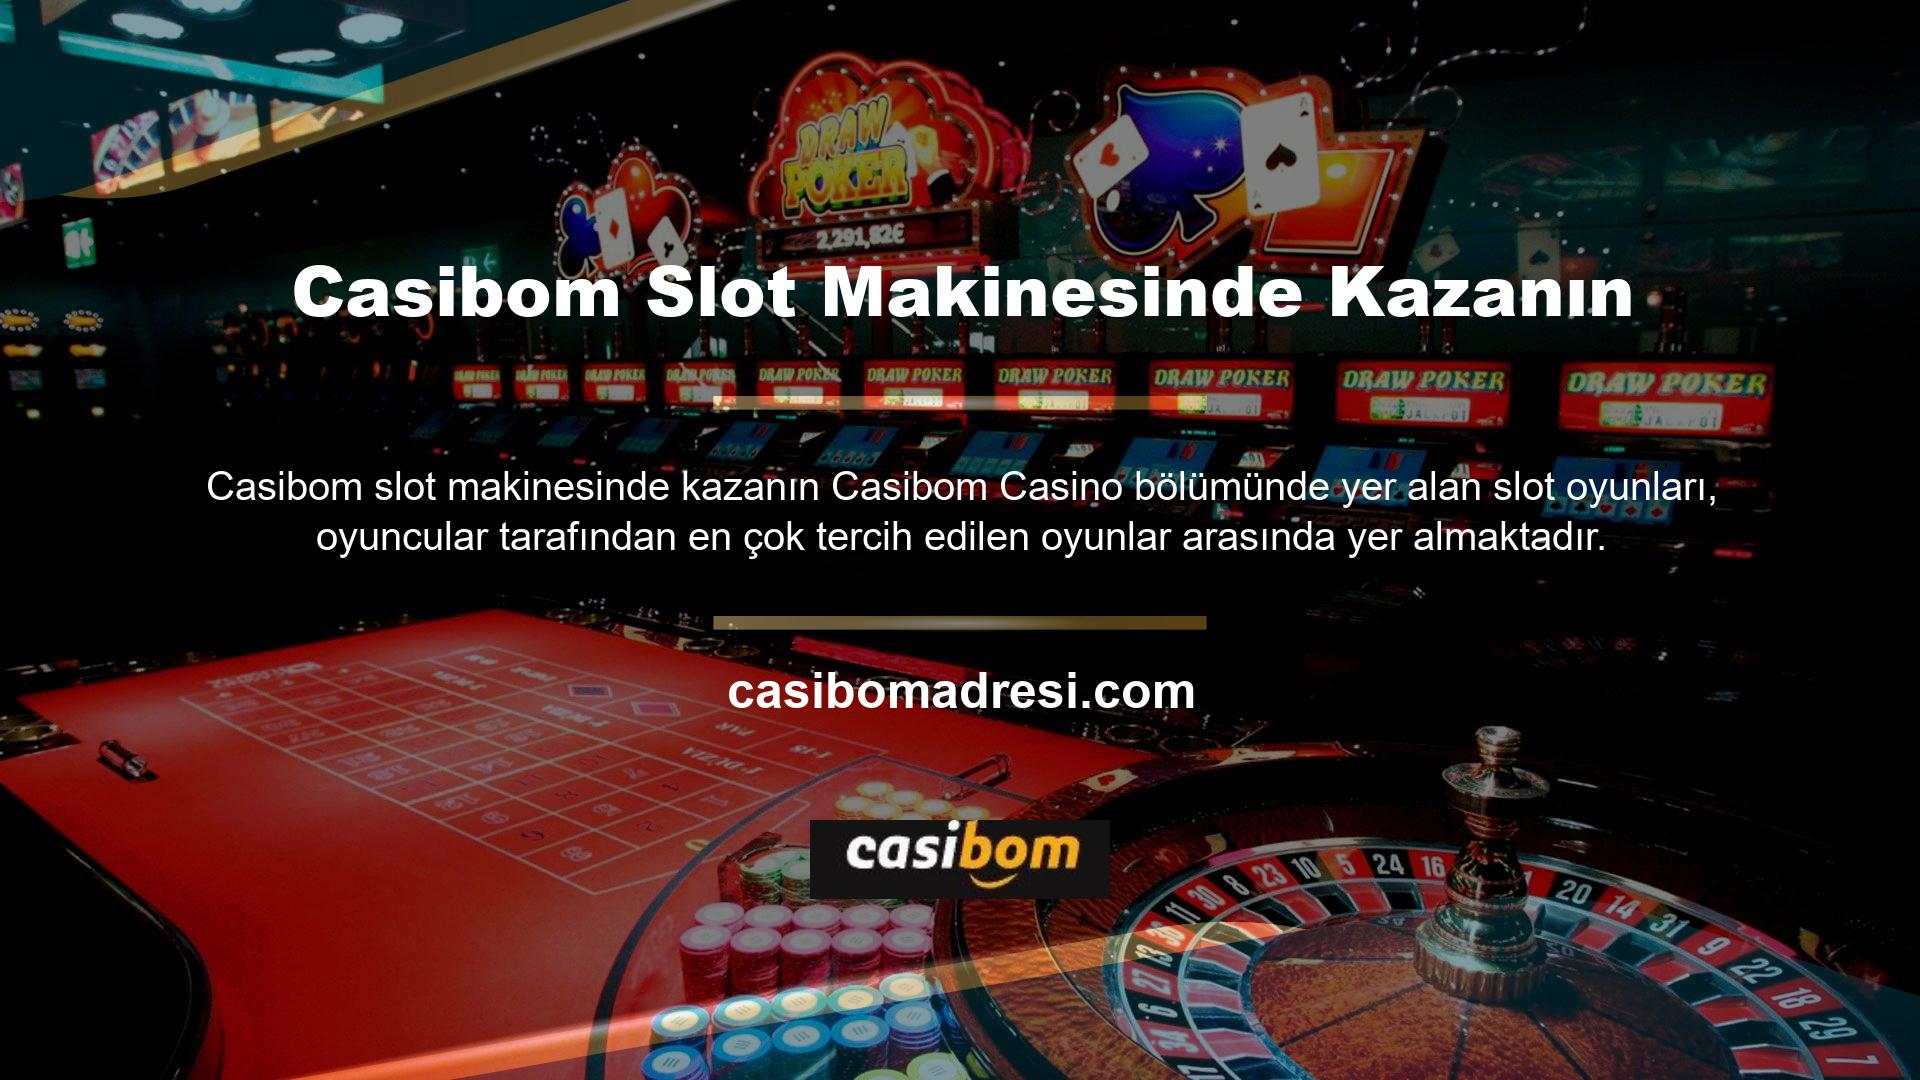 Bildiğiniz üzere eski zamanlarda casinolarda slot makineleri sıklıkla oynanıyordu